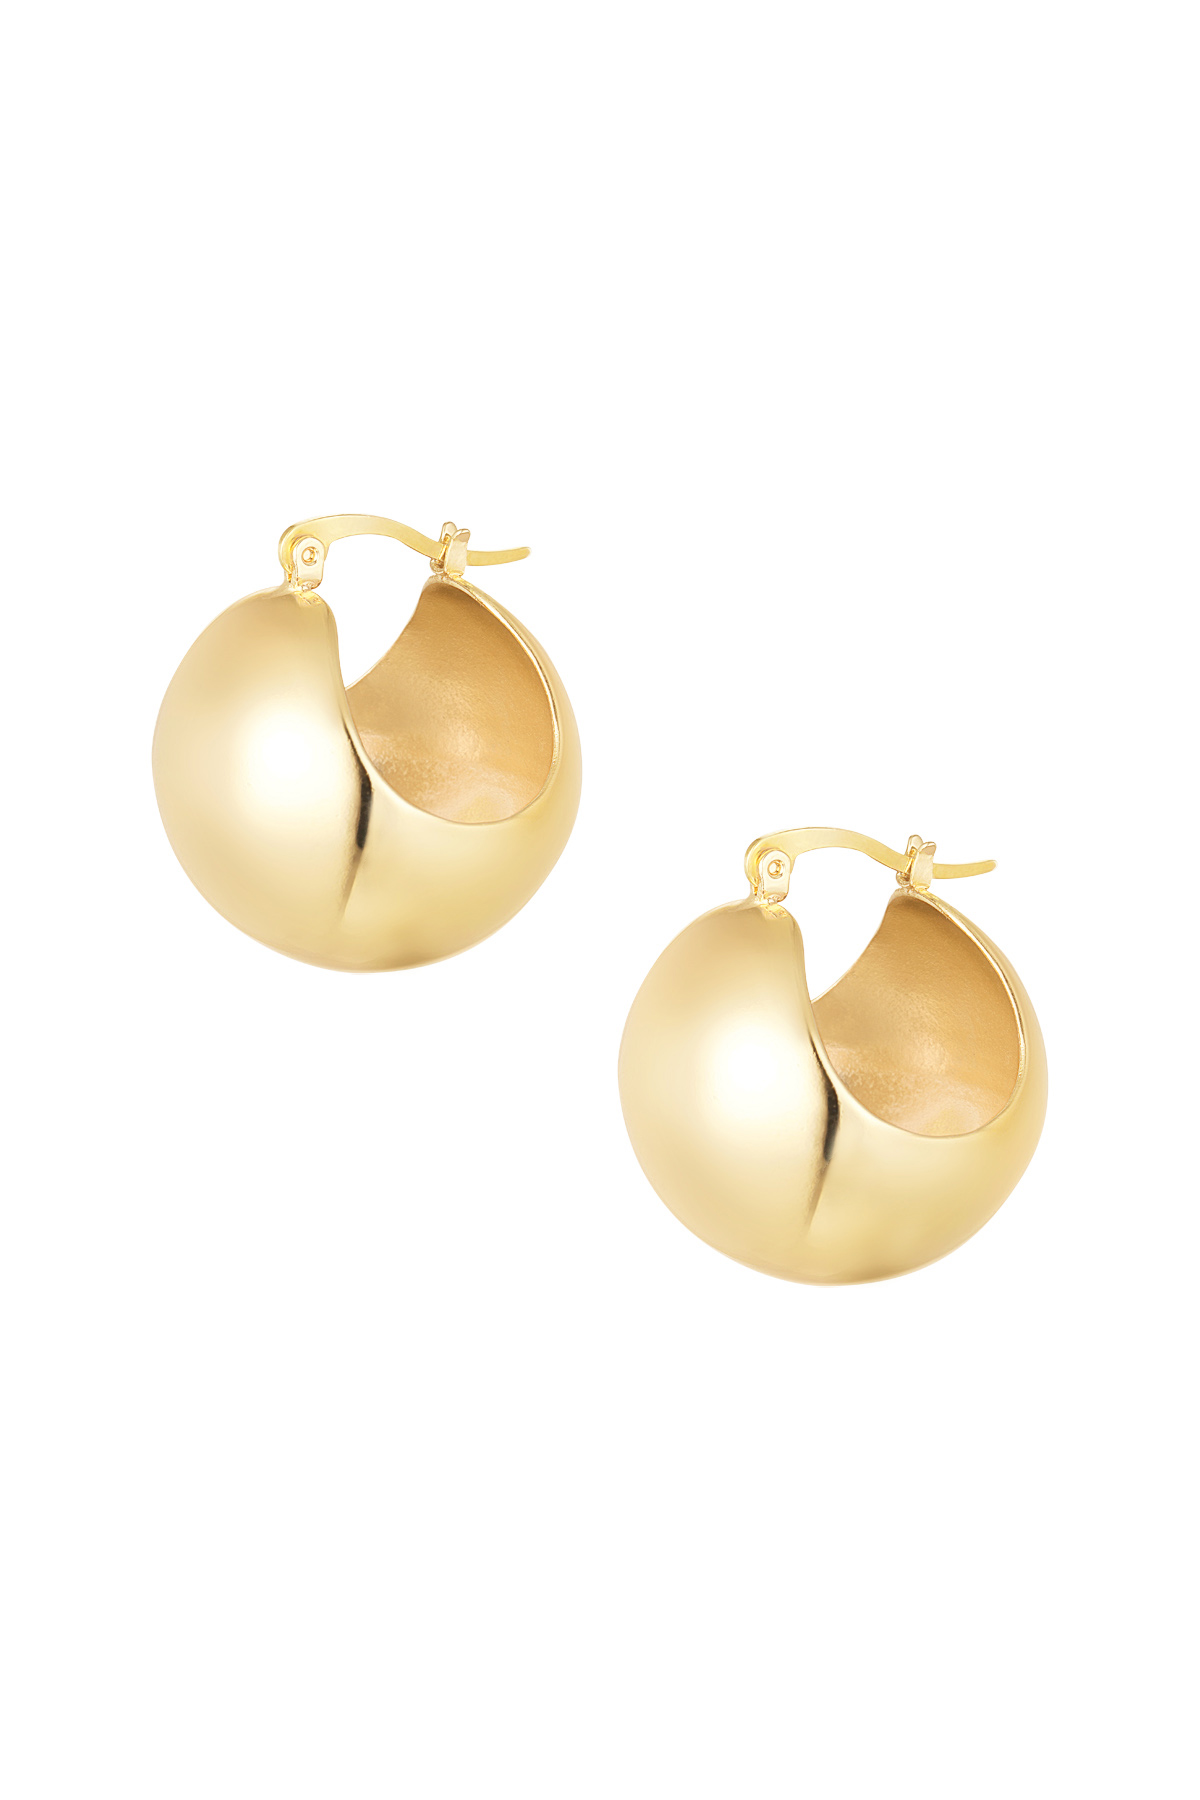 Earrings classy - gold